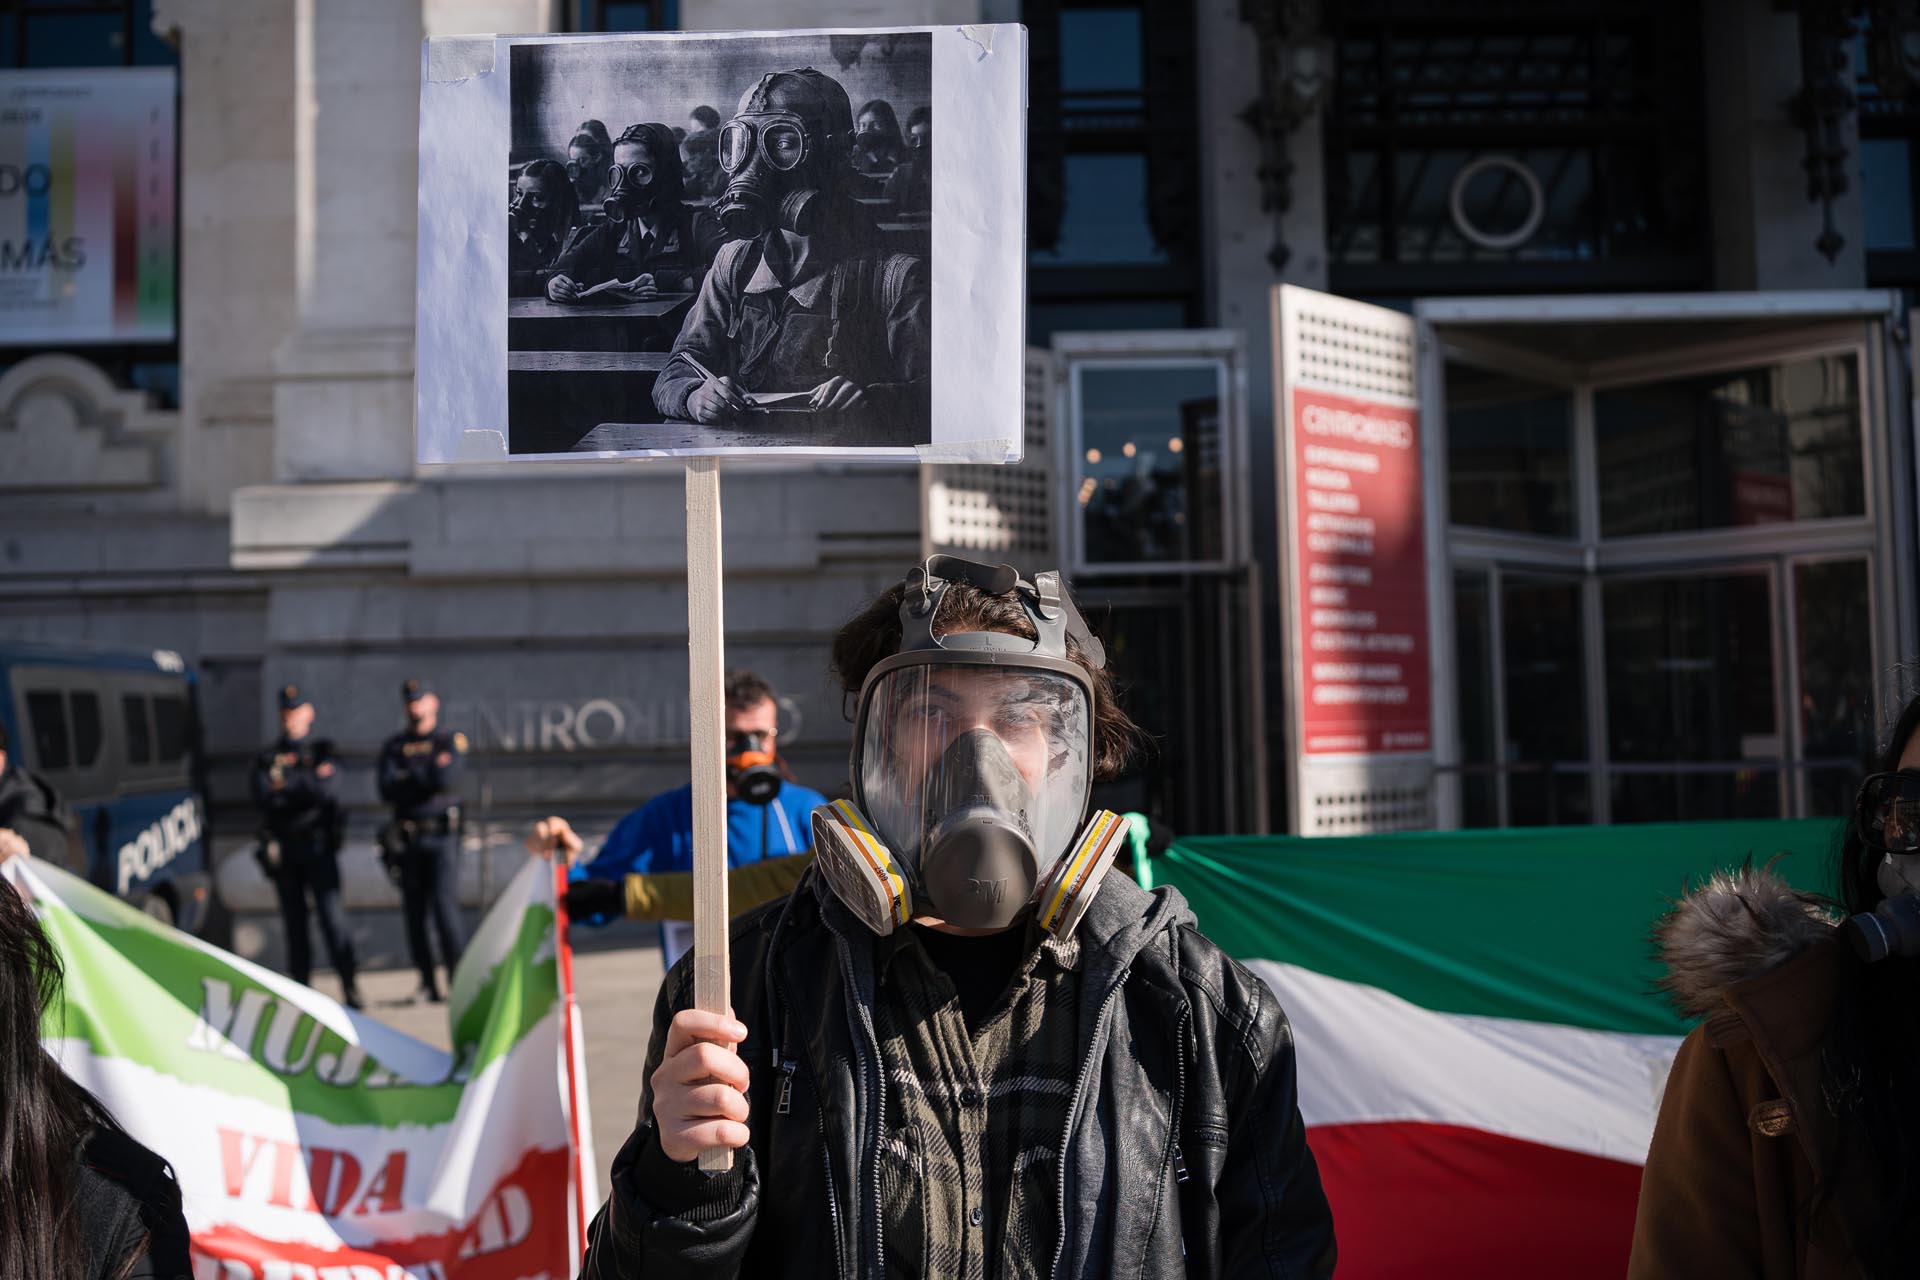 Un hombre sostiene una pancarta con el dibujo de una niña con máscaras de gas en Irán durante la manifestación. Ciudadanos iraníes residentes en España, protestan en la Plaza de Cibeles, Madrid, contra los cientos de casos de niñas envenenadas en colegios que se denuncian desde el pasado mes de noviembre en Irán. (Foto de Diego Radamés / SOPA Images/Sipa USA)